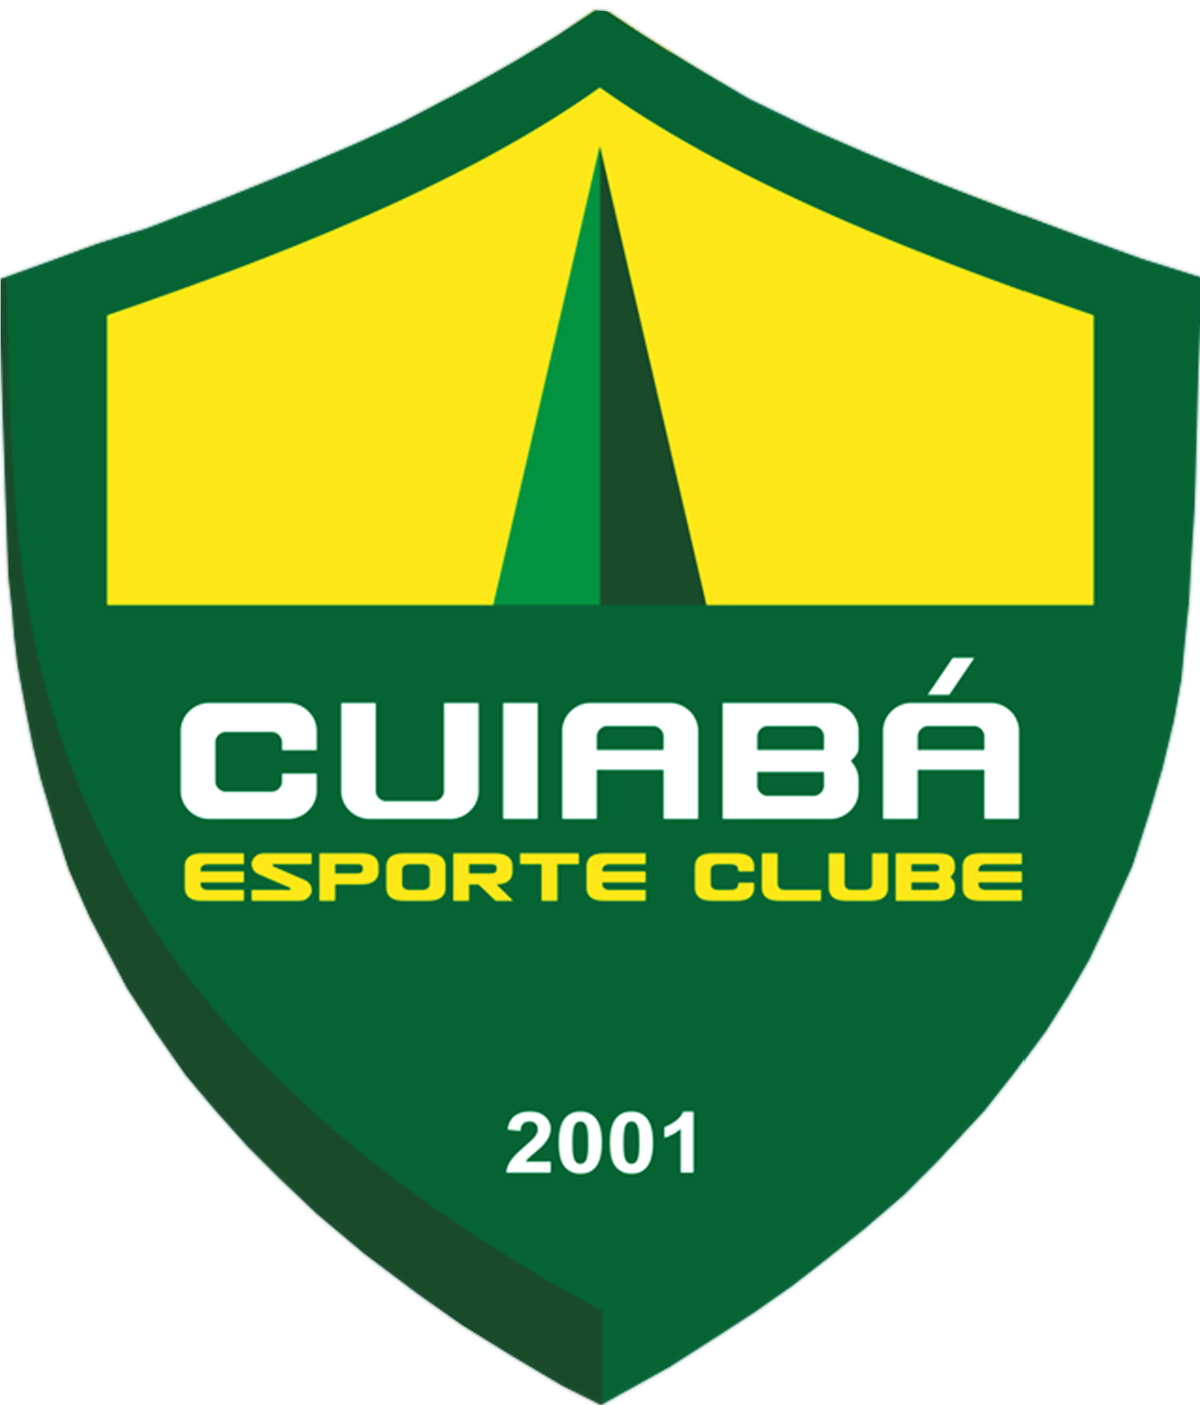 Cuiabá vs Santos: Bet on the home team